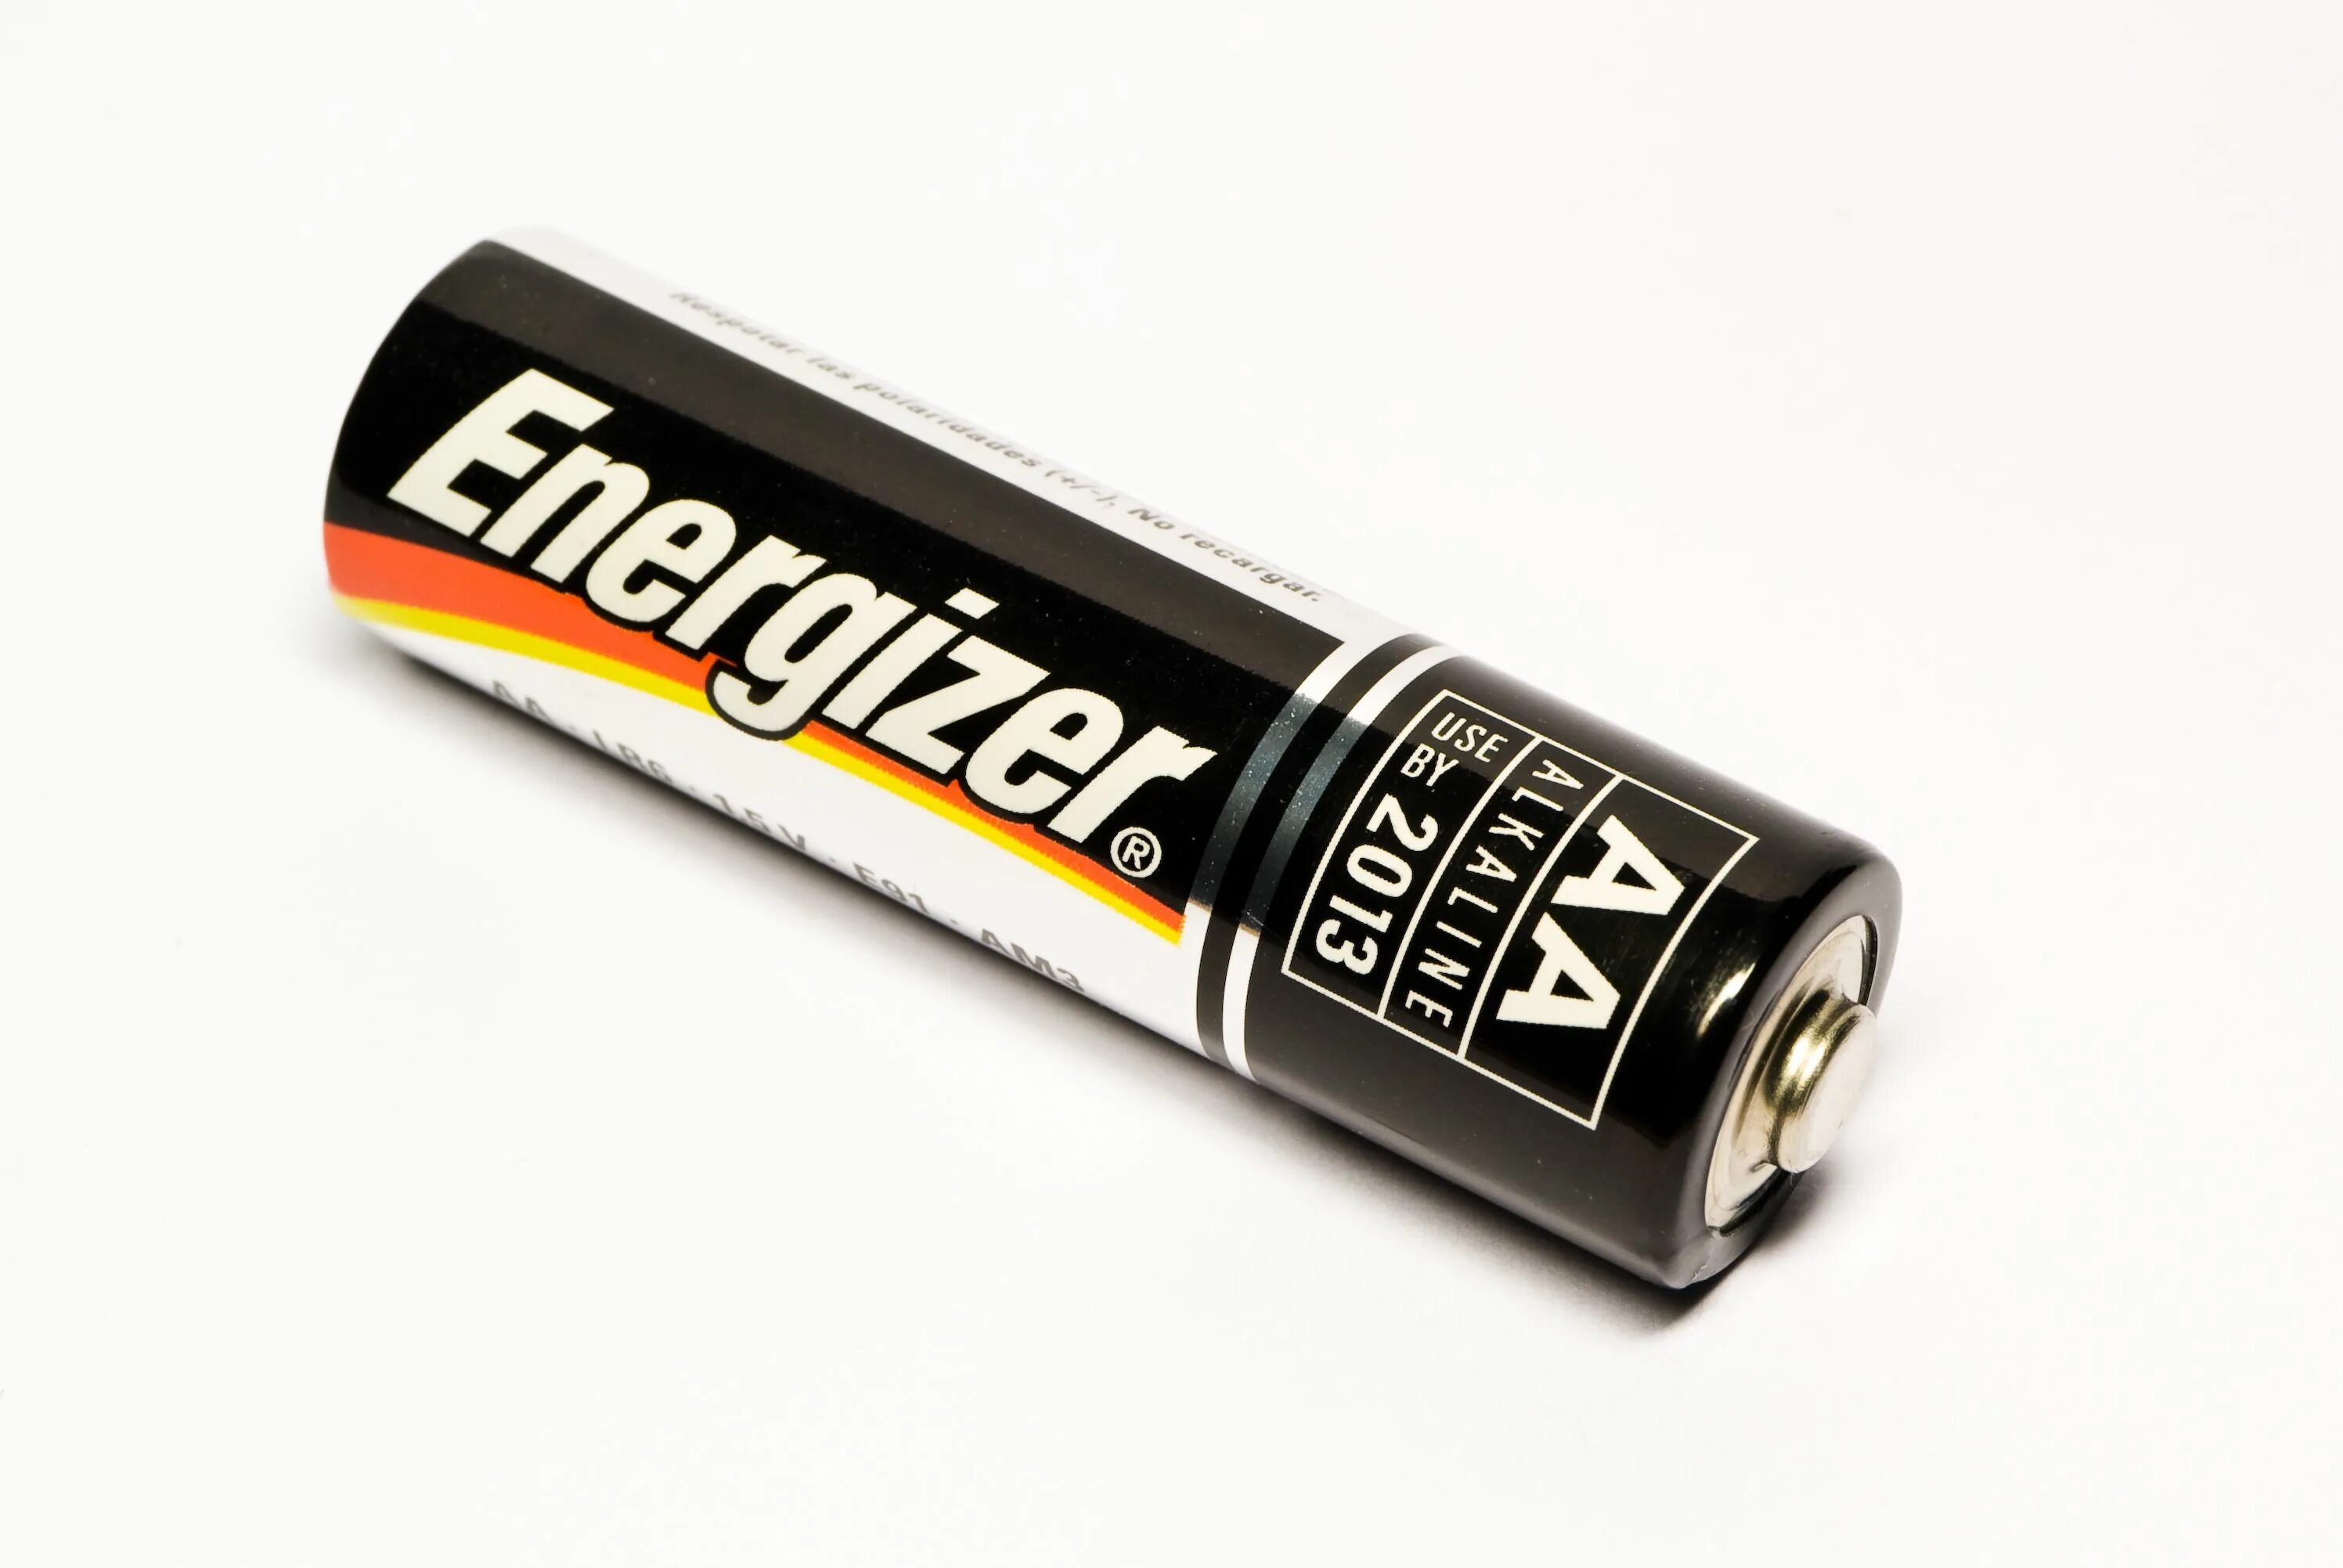 Батарейка пнг. Батарейка а544. Изображение батарейки. Батарейка на белом фоне. Батарейка без фона.